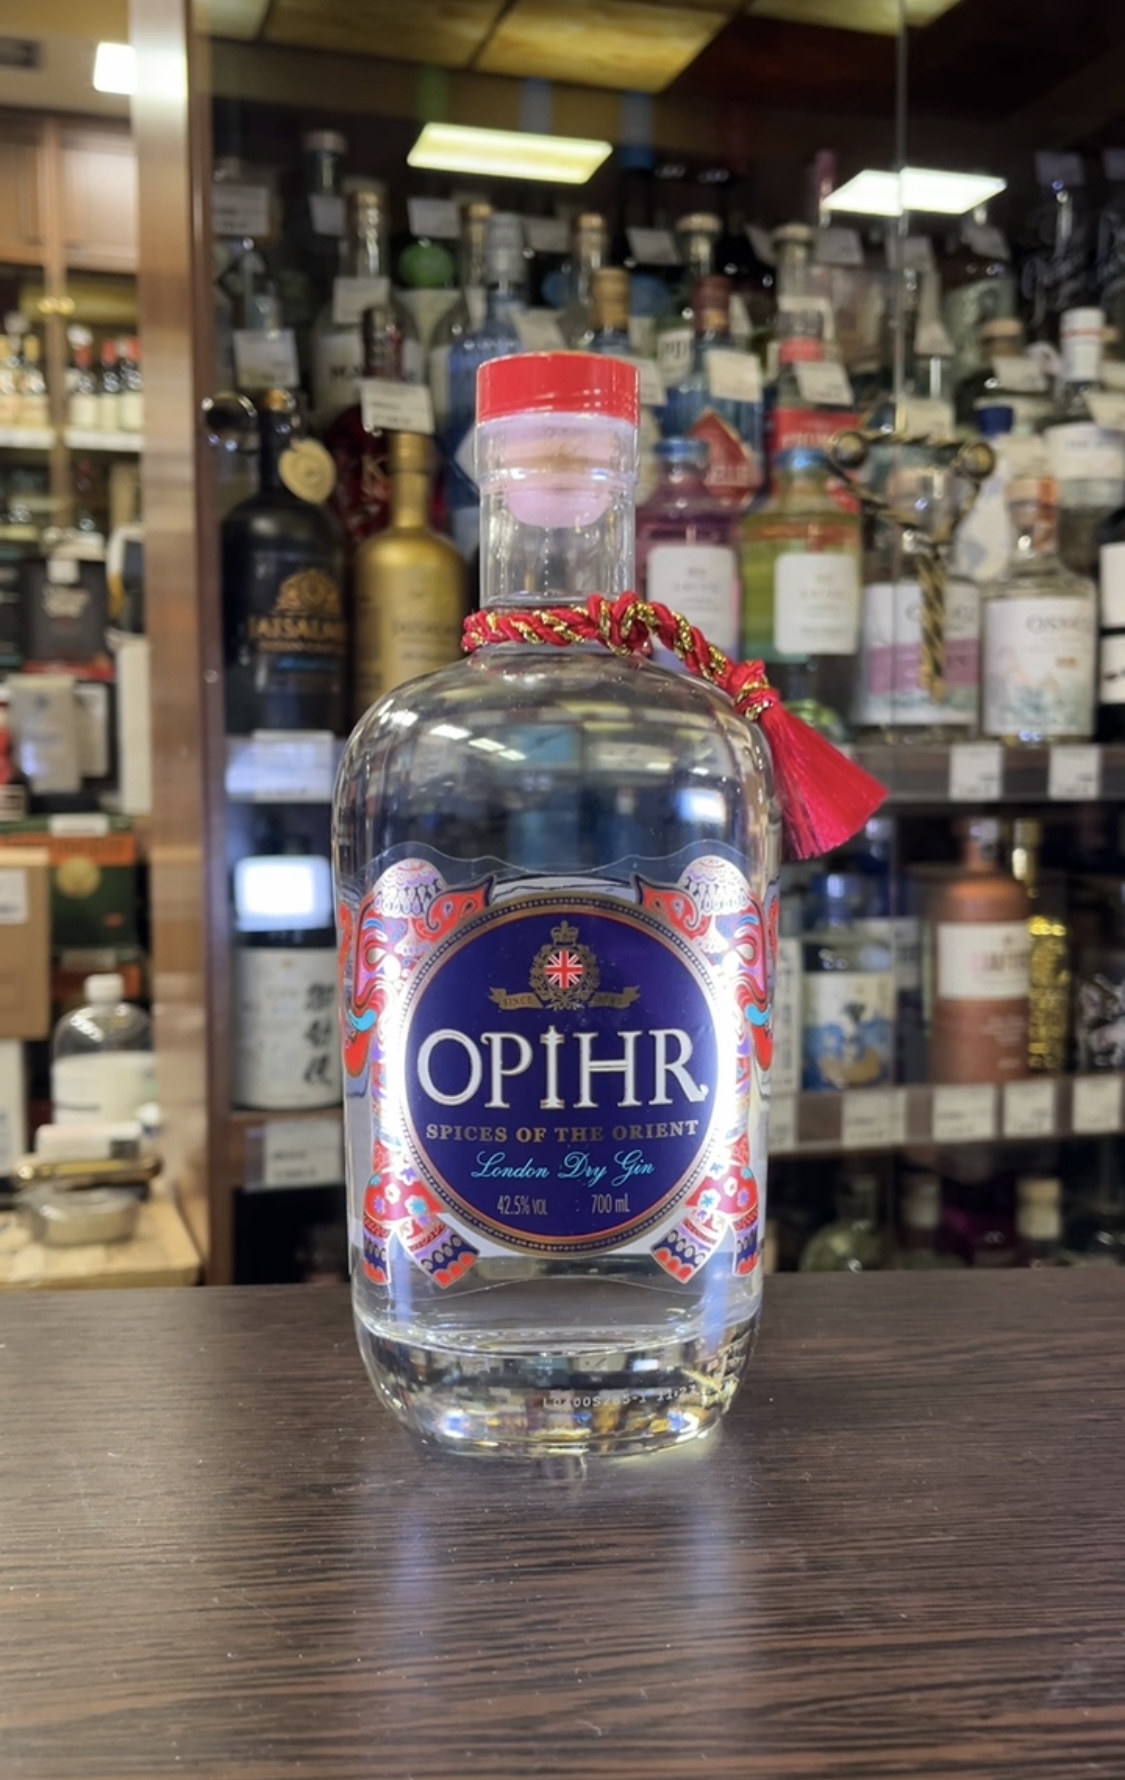 Opihr Oriental Spiced Gin Джин Опир Ориентал Спайсд 0.7л